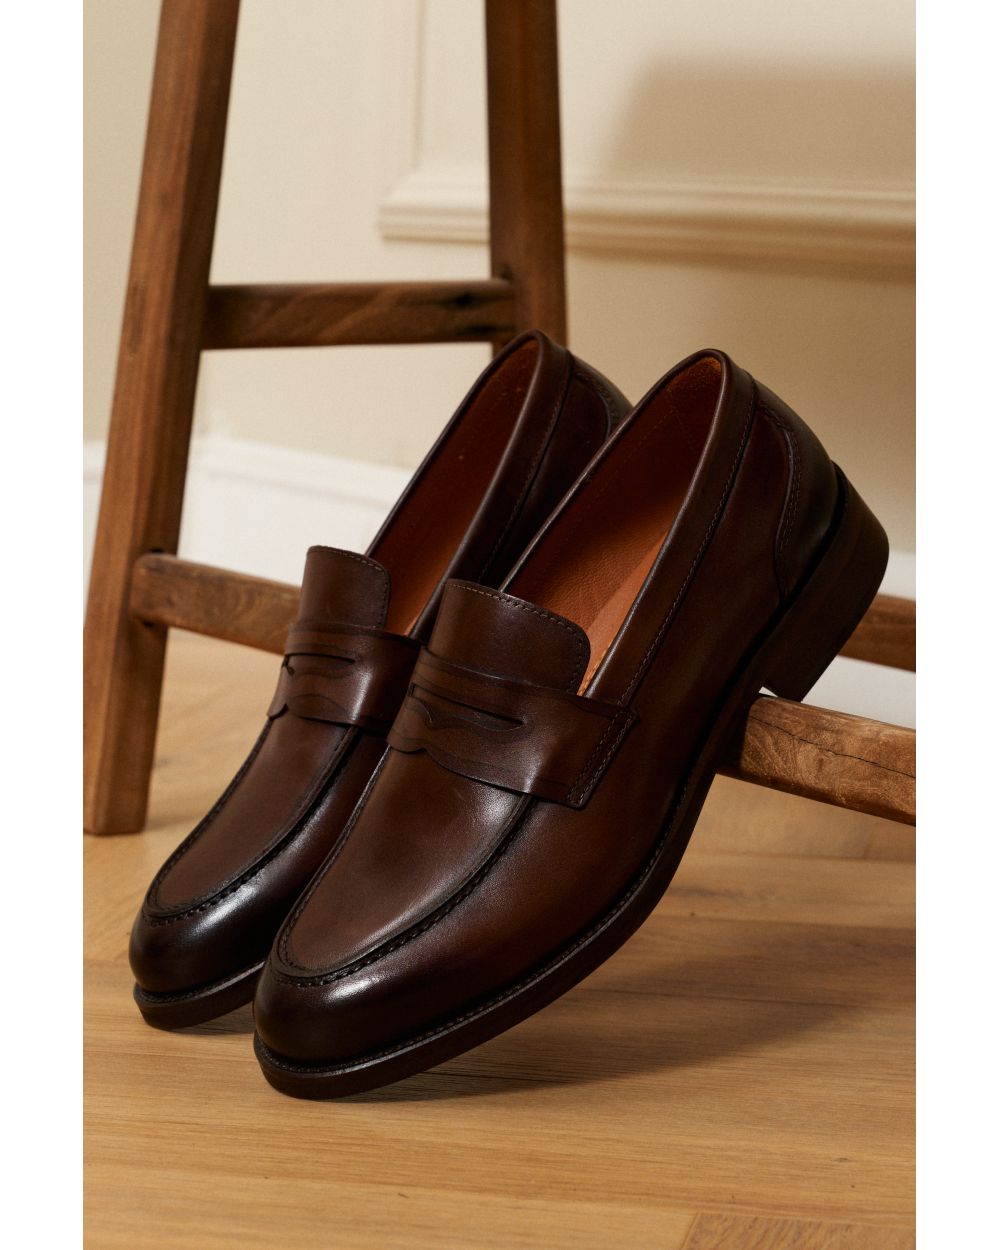 Туфли мужские пенни-лоферы коричневые из гладкой кожи